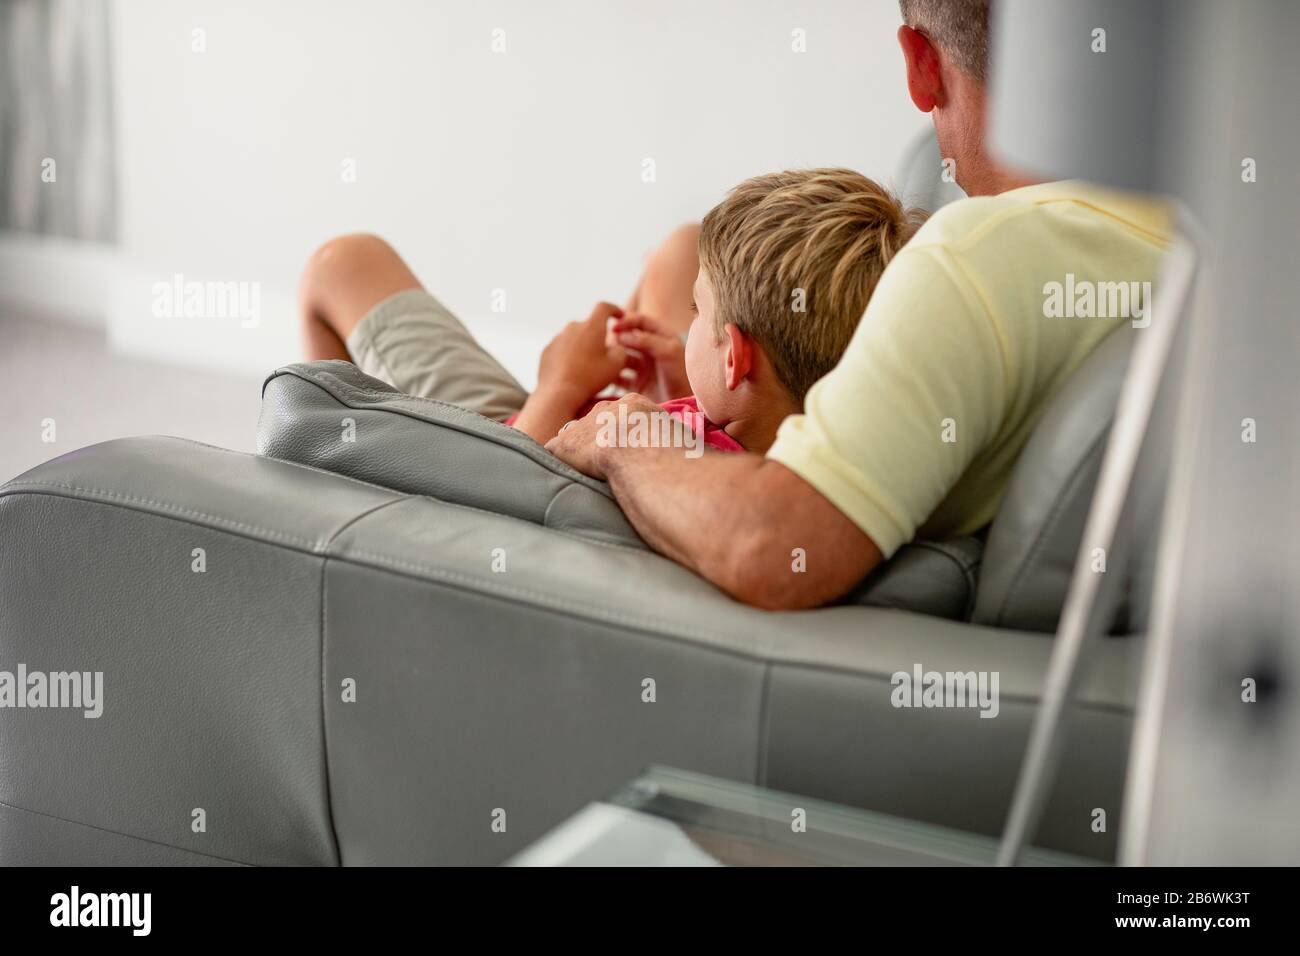 Eine Rückansicht eines jungen Jungen, der mit seinem Vater auf einer Couch aufliegt und Fernsehen sieht, trägt sie legere Kleidung. Stockfoto